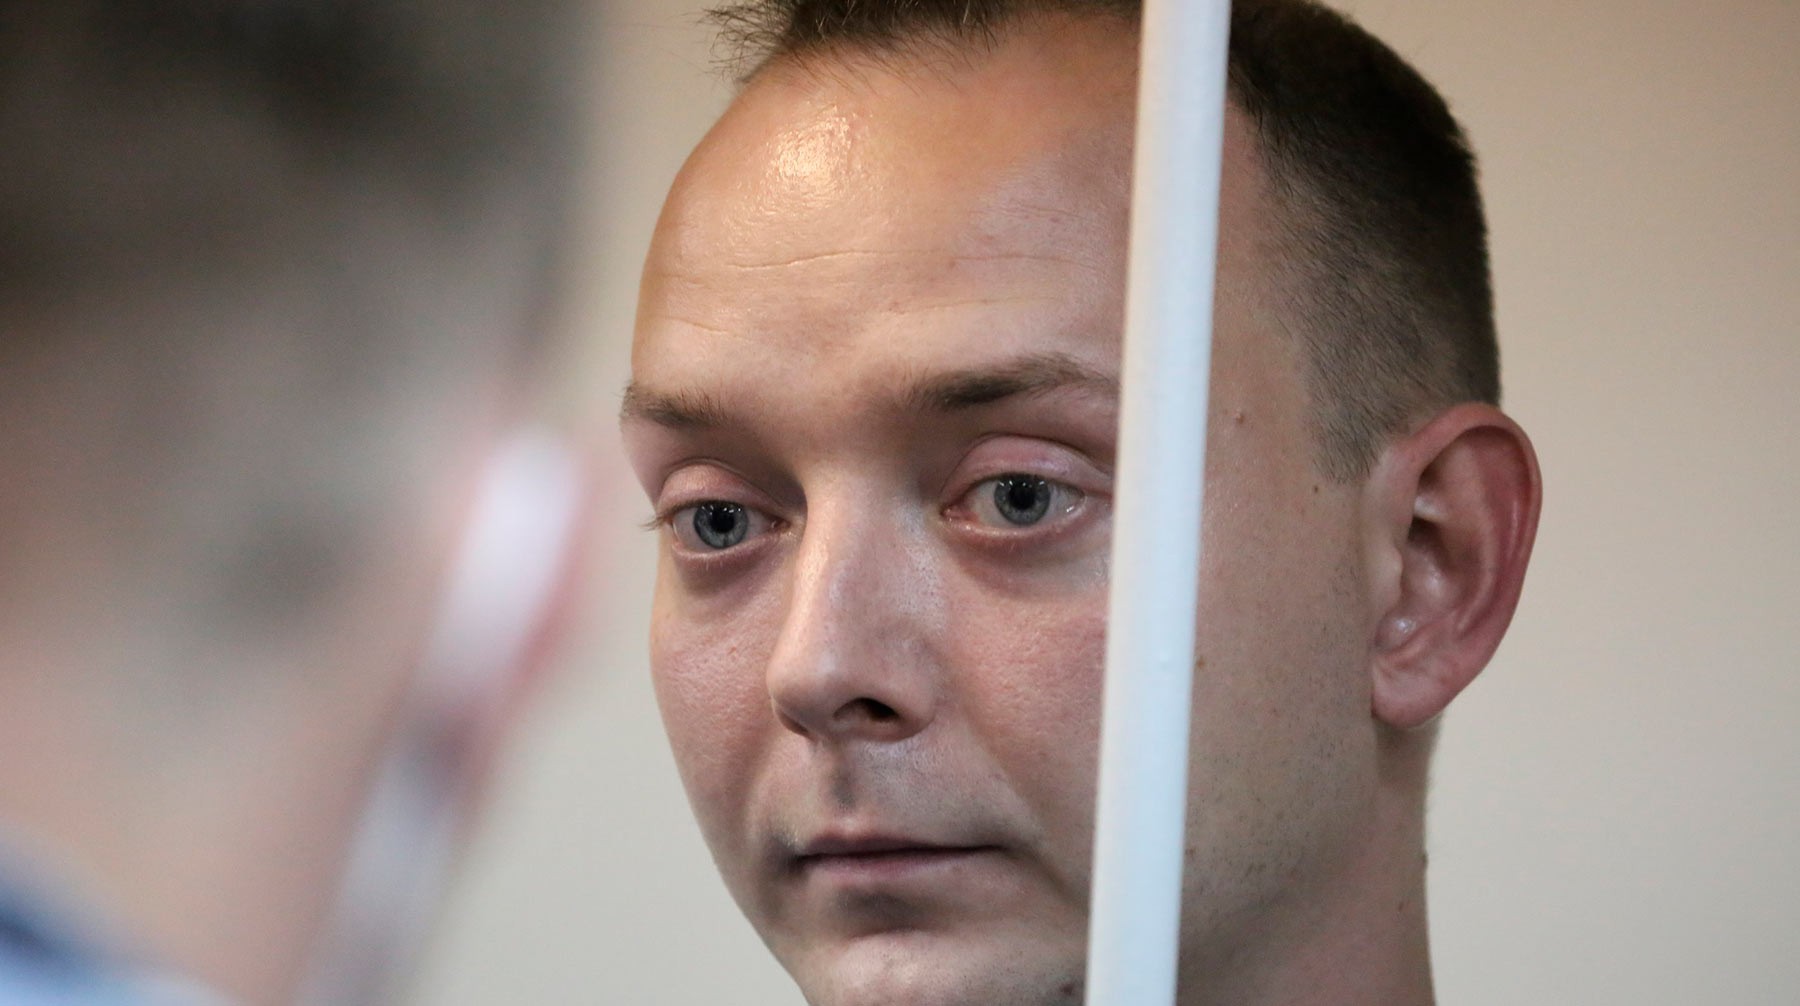 Dailystorm - ФСБ предъявила Сафронову обвинение в госизмене